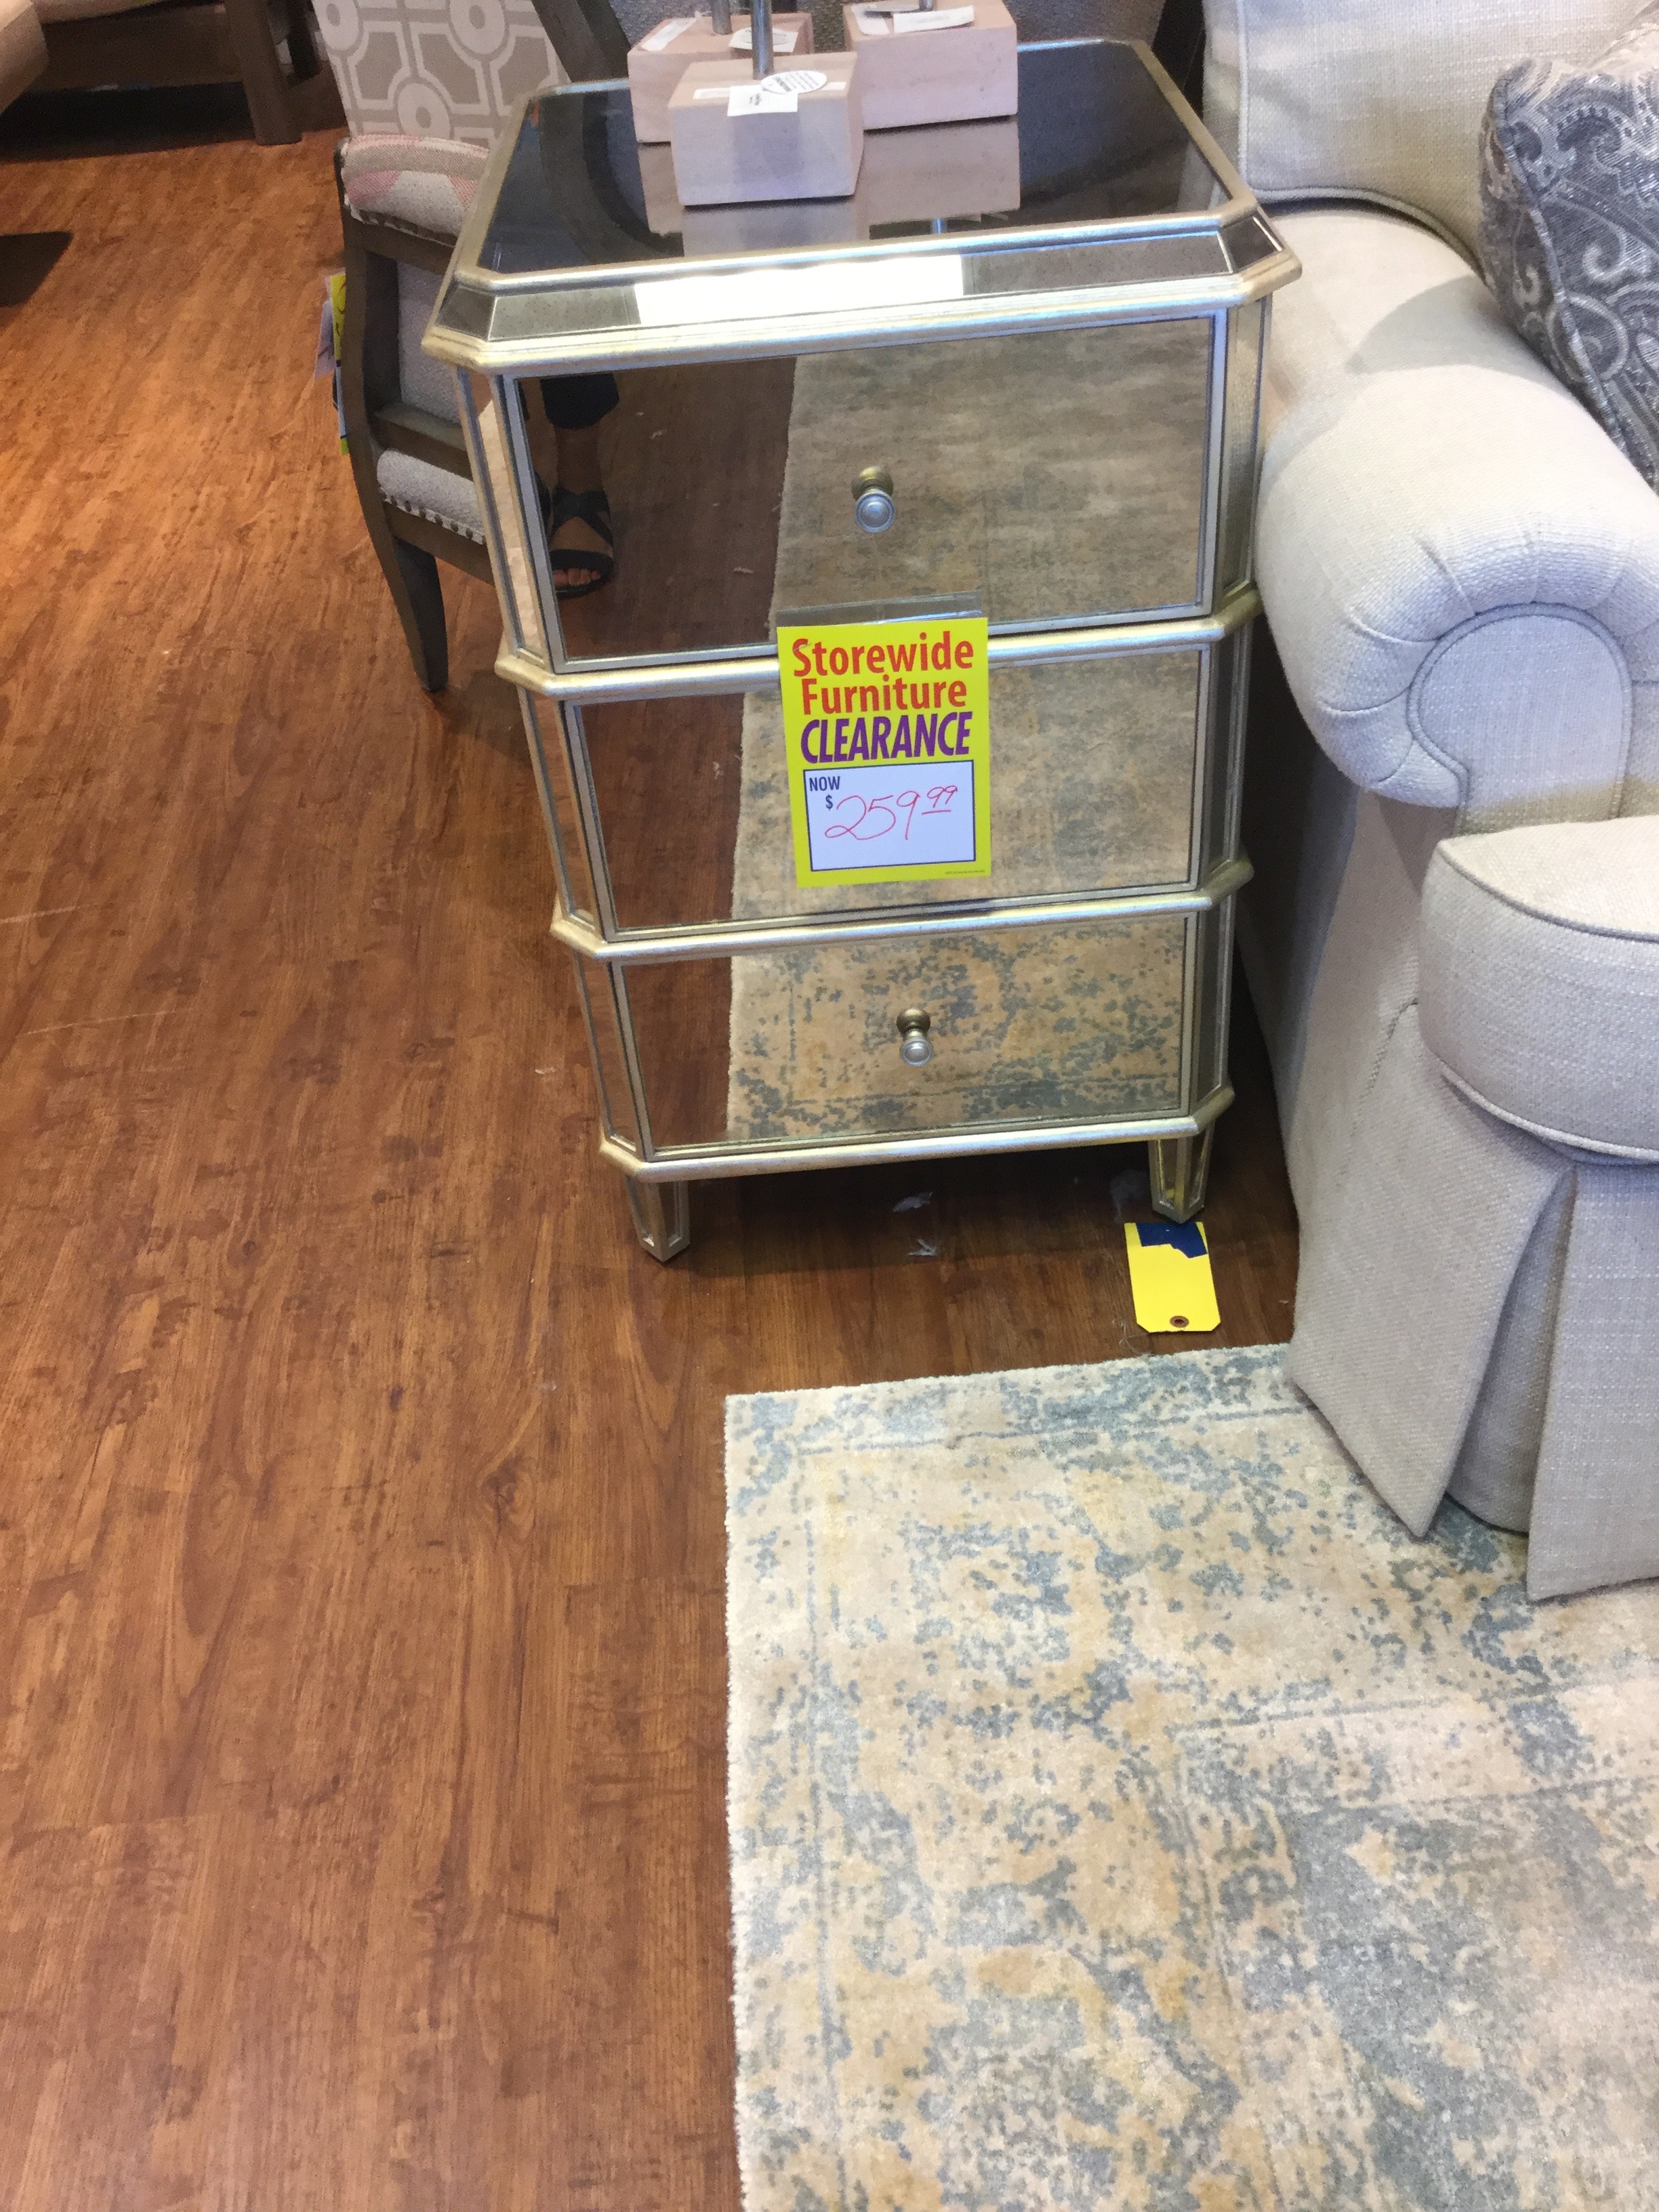 drexel heritage furniture price